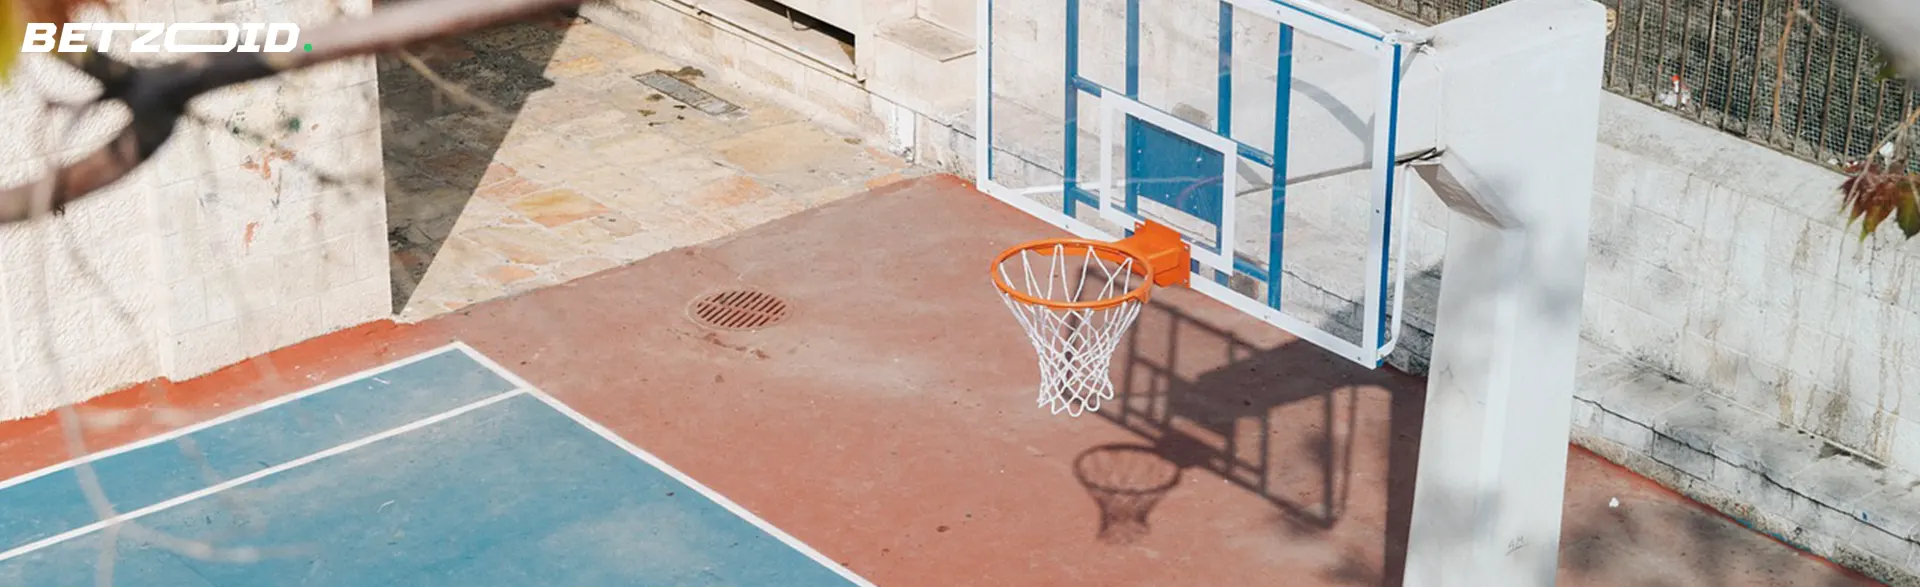 A sunlit outdoor basketball court featuring a hoop and net.